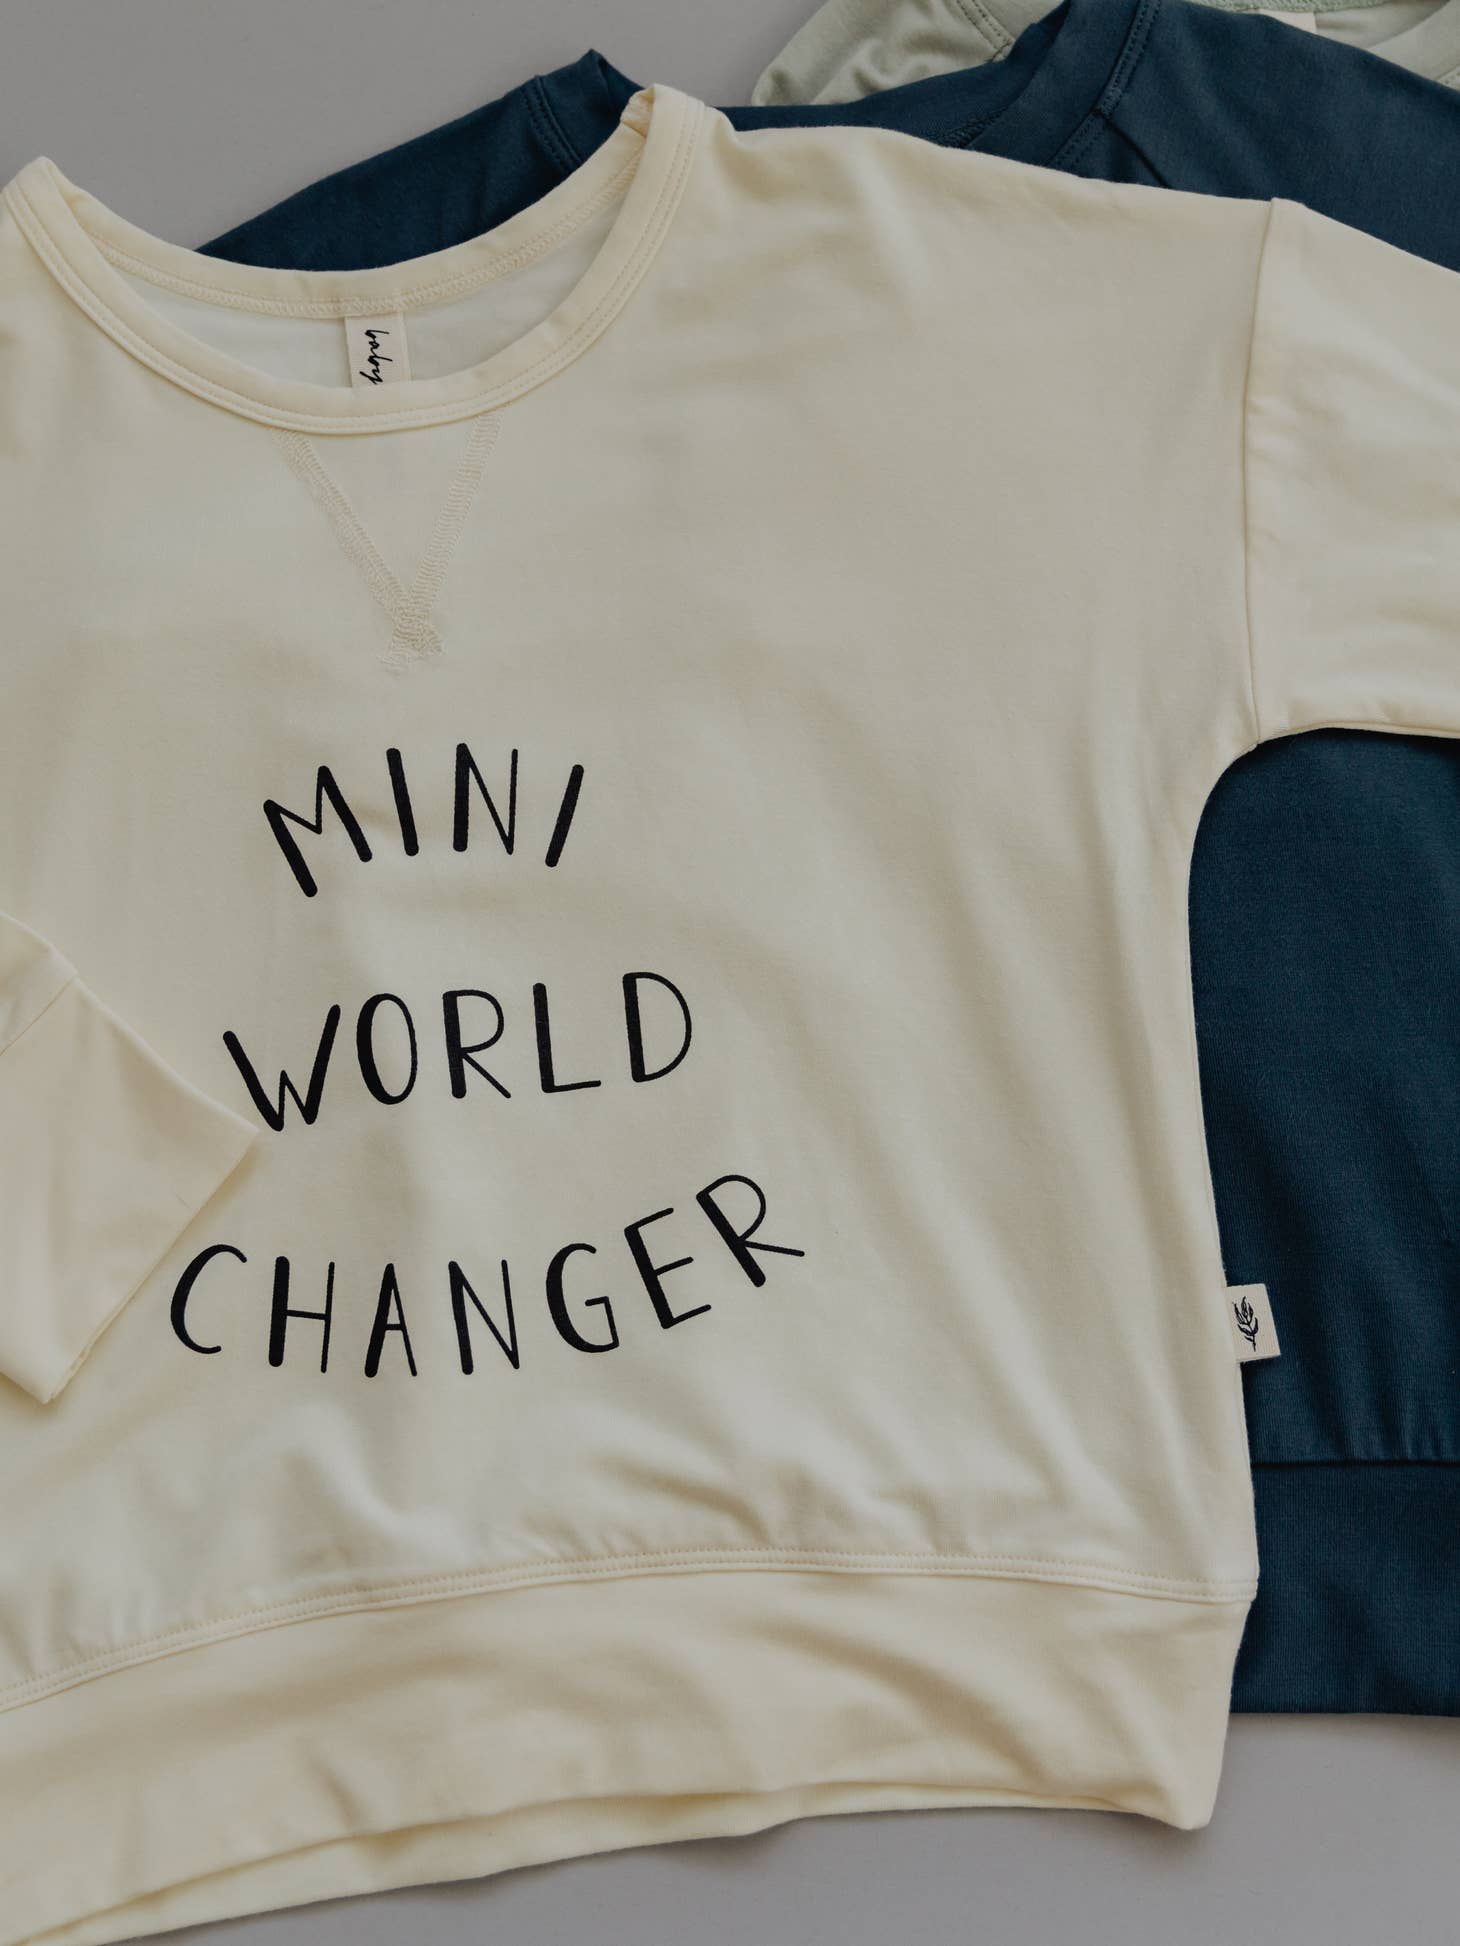 Drop-Shoulder Sweatshirt - Mini World Changer